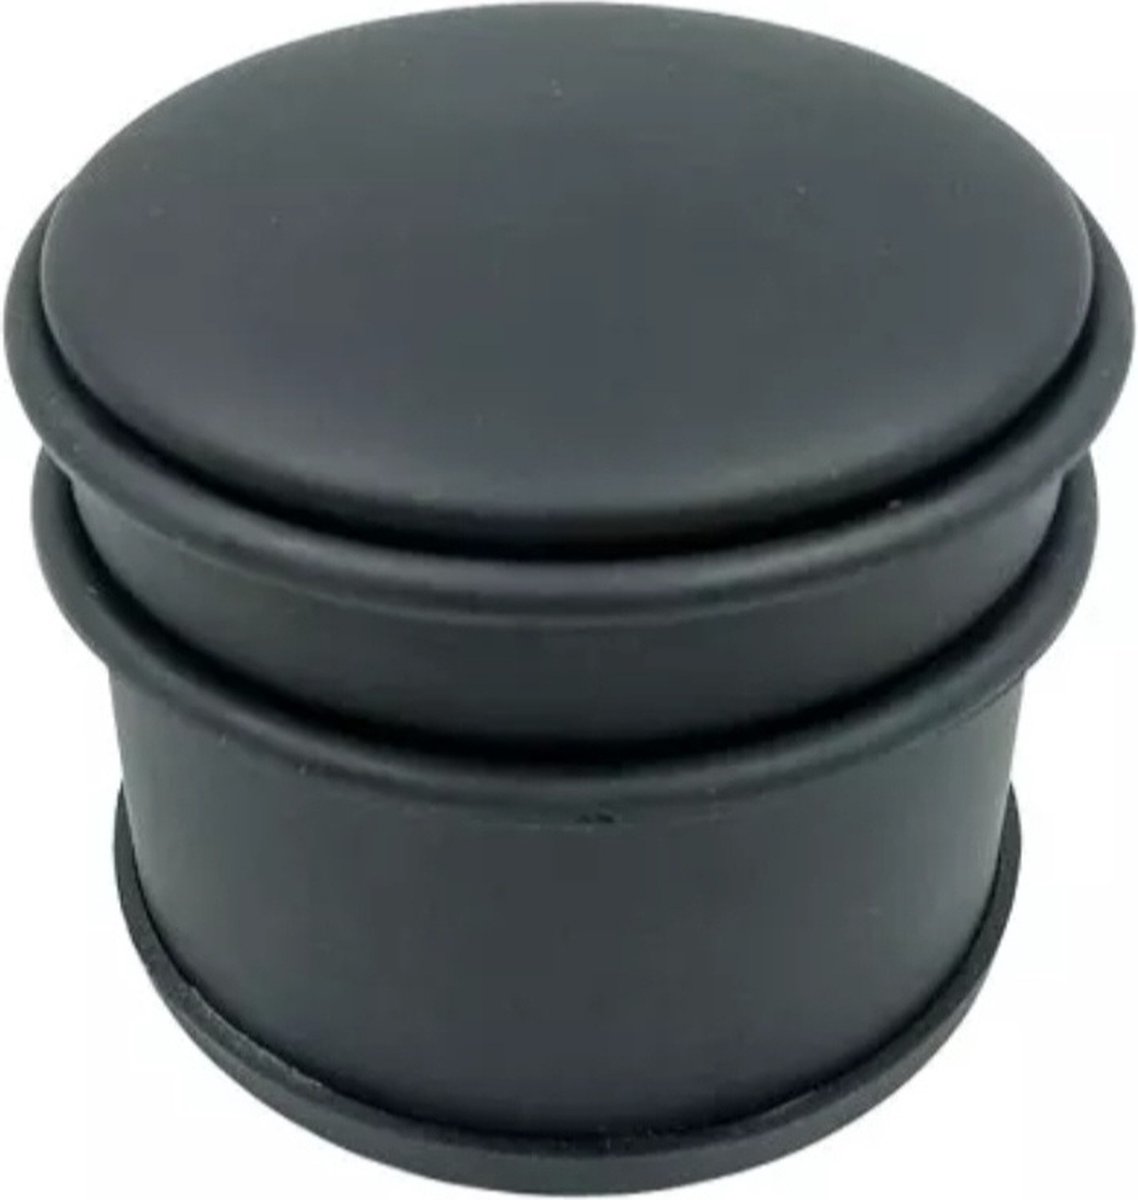 Deurstop Ø9x7.5cm -Deurbuffer voor Binnen en Buiten - Beschermrand - Deurstopper van Metaal - Doorstop - Deurbuffer - 2stuks